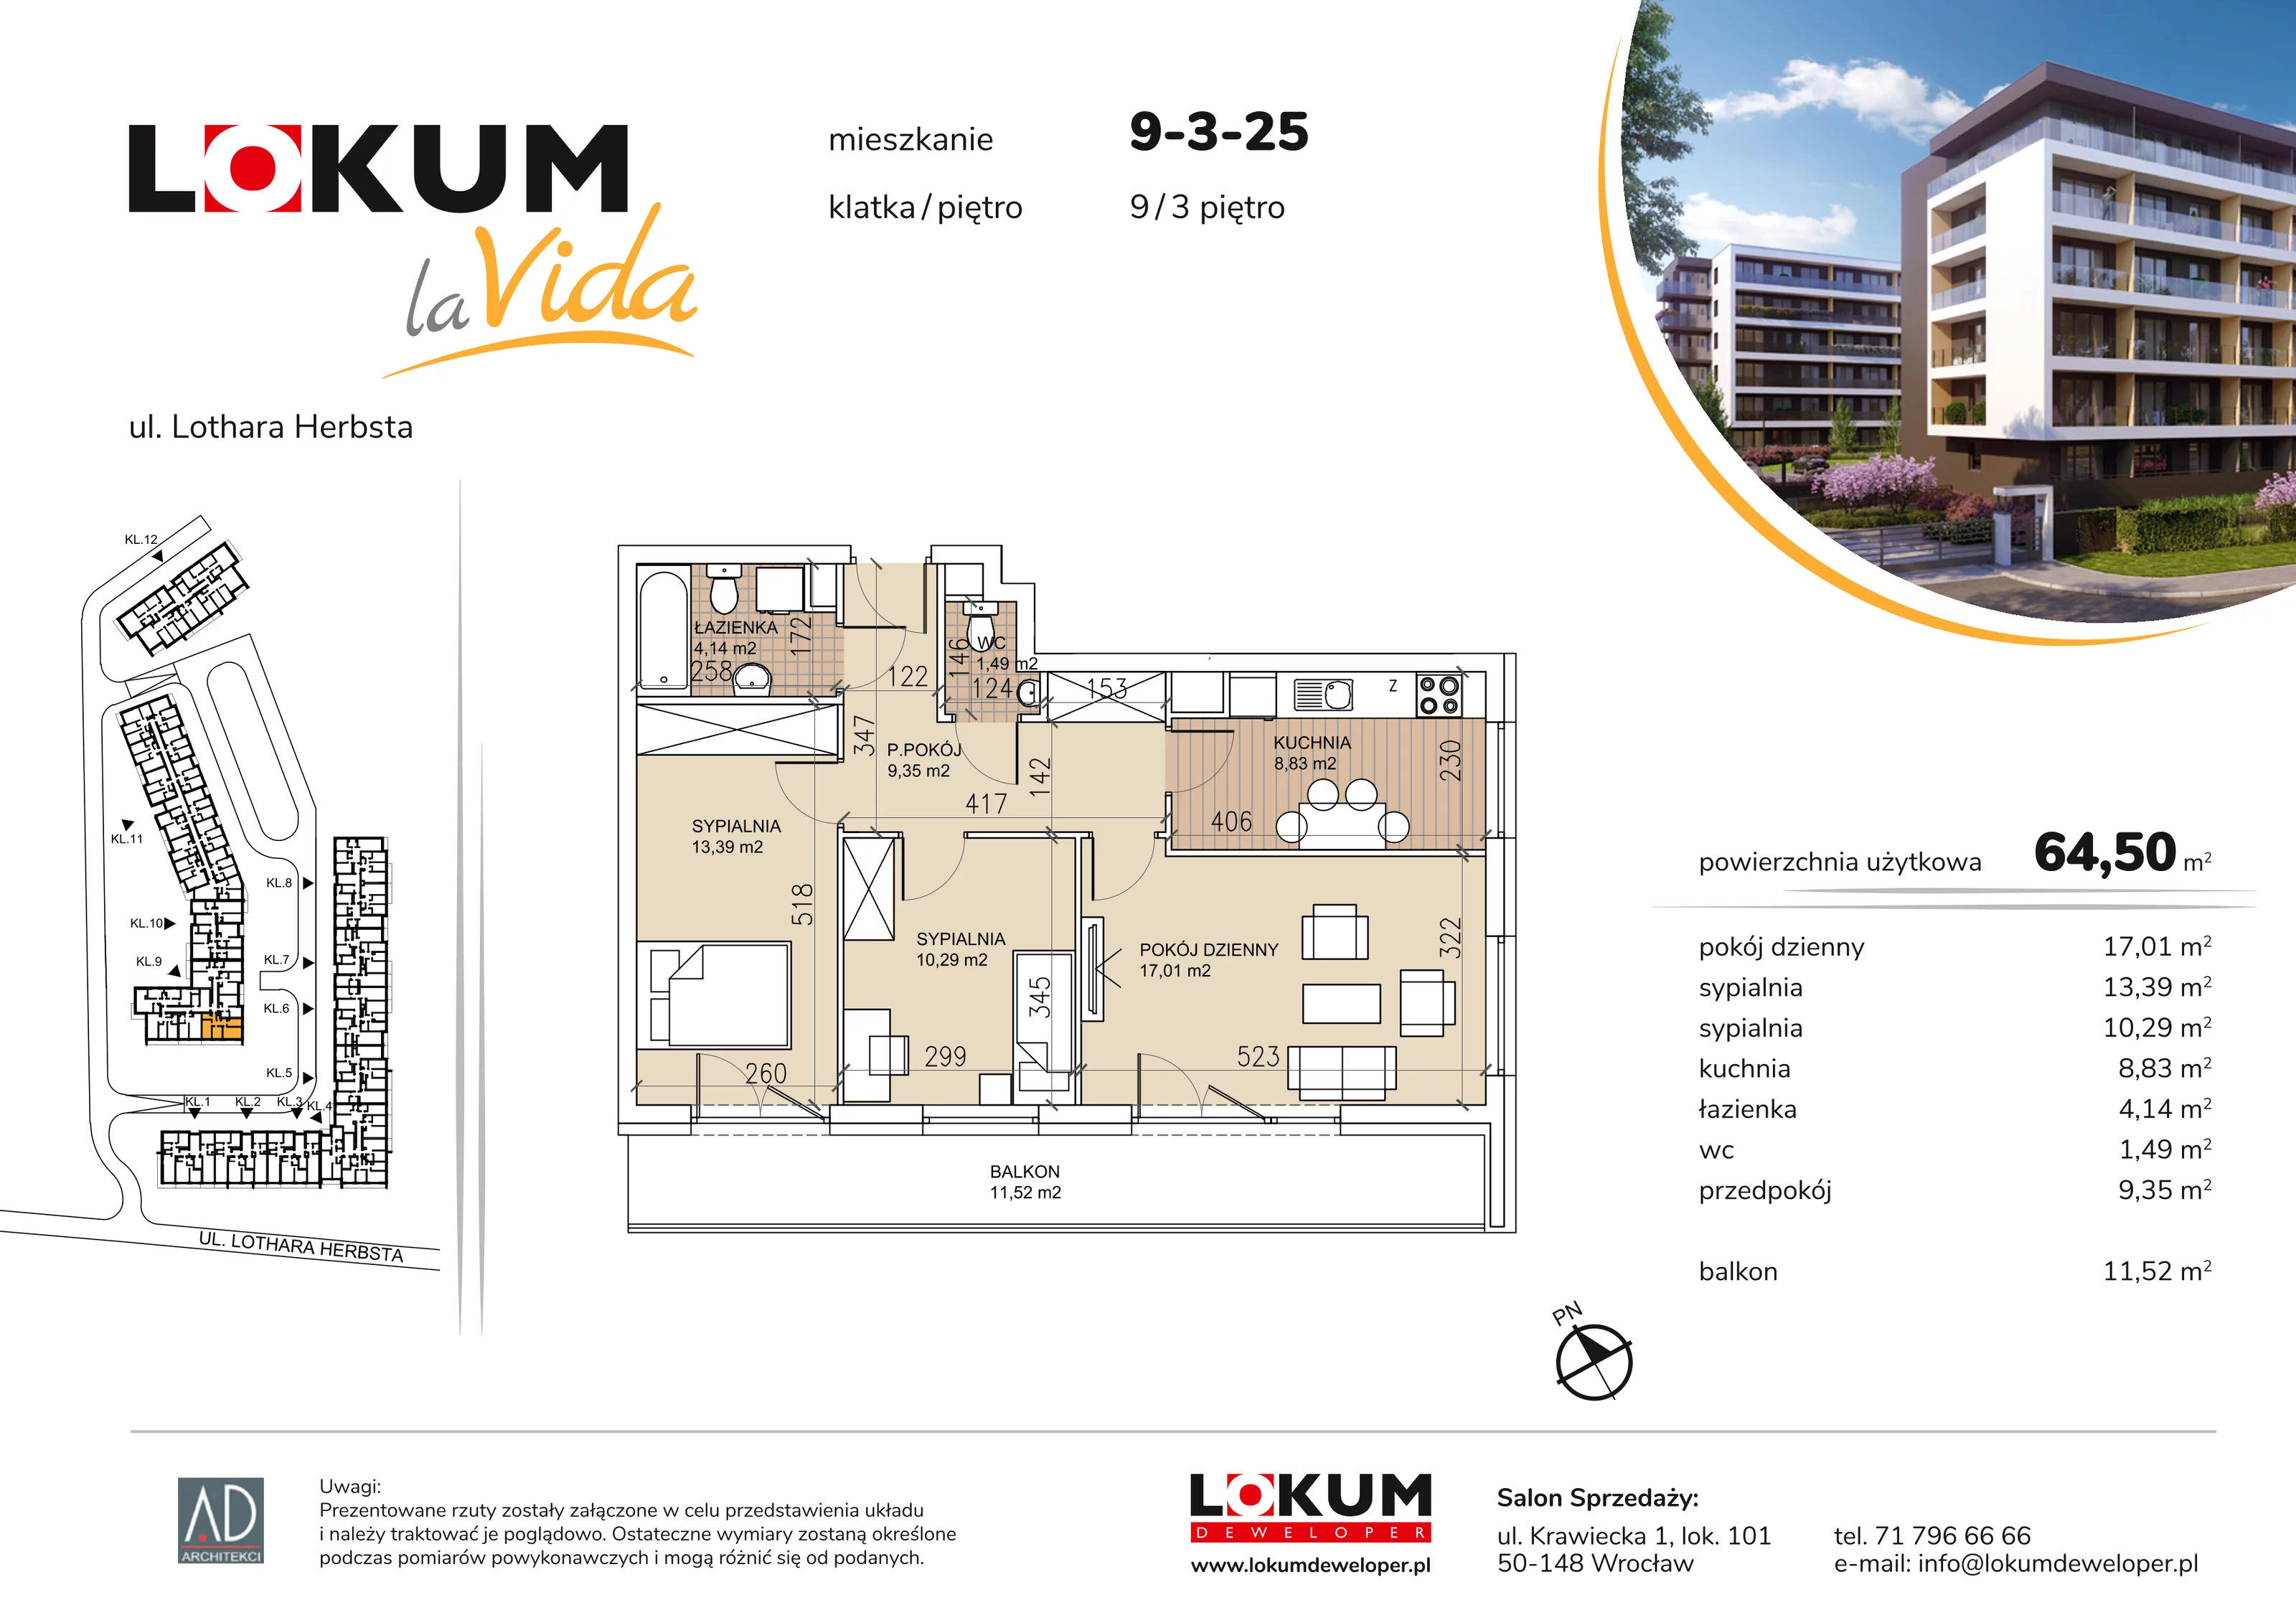 Mieszkanie 64,50 m², piętro 3, oferta nr 9-3-25, Lokum la Vida, Wrocław, Sołtysowice, ul. Lothara Herbsta